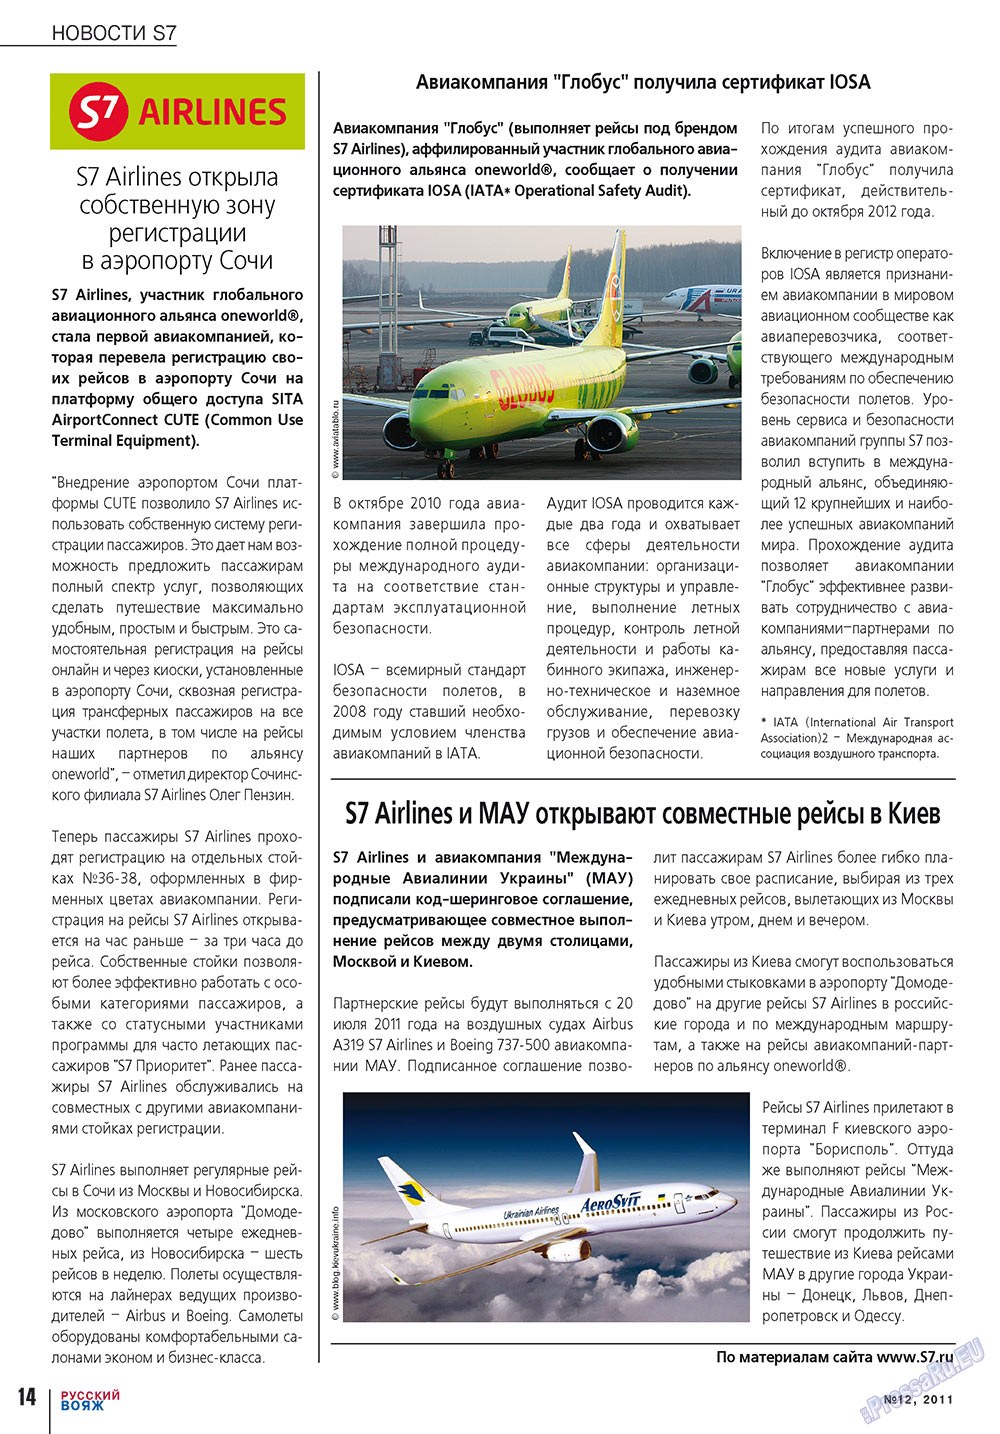 Русский вояж, журнал. 2011 №12 стр.14